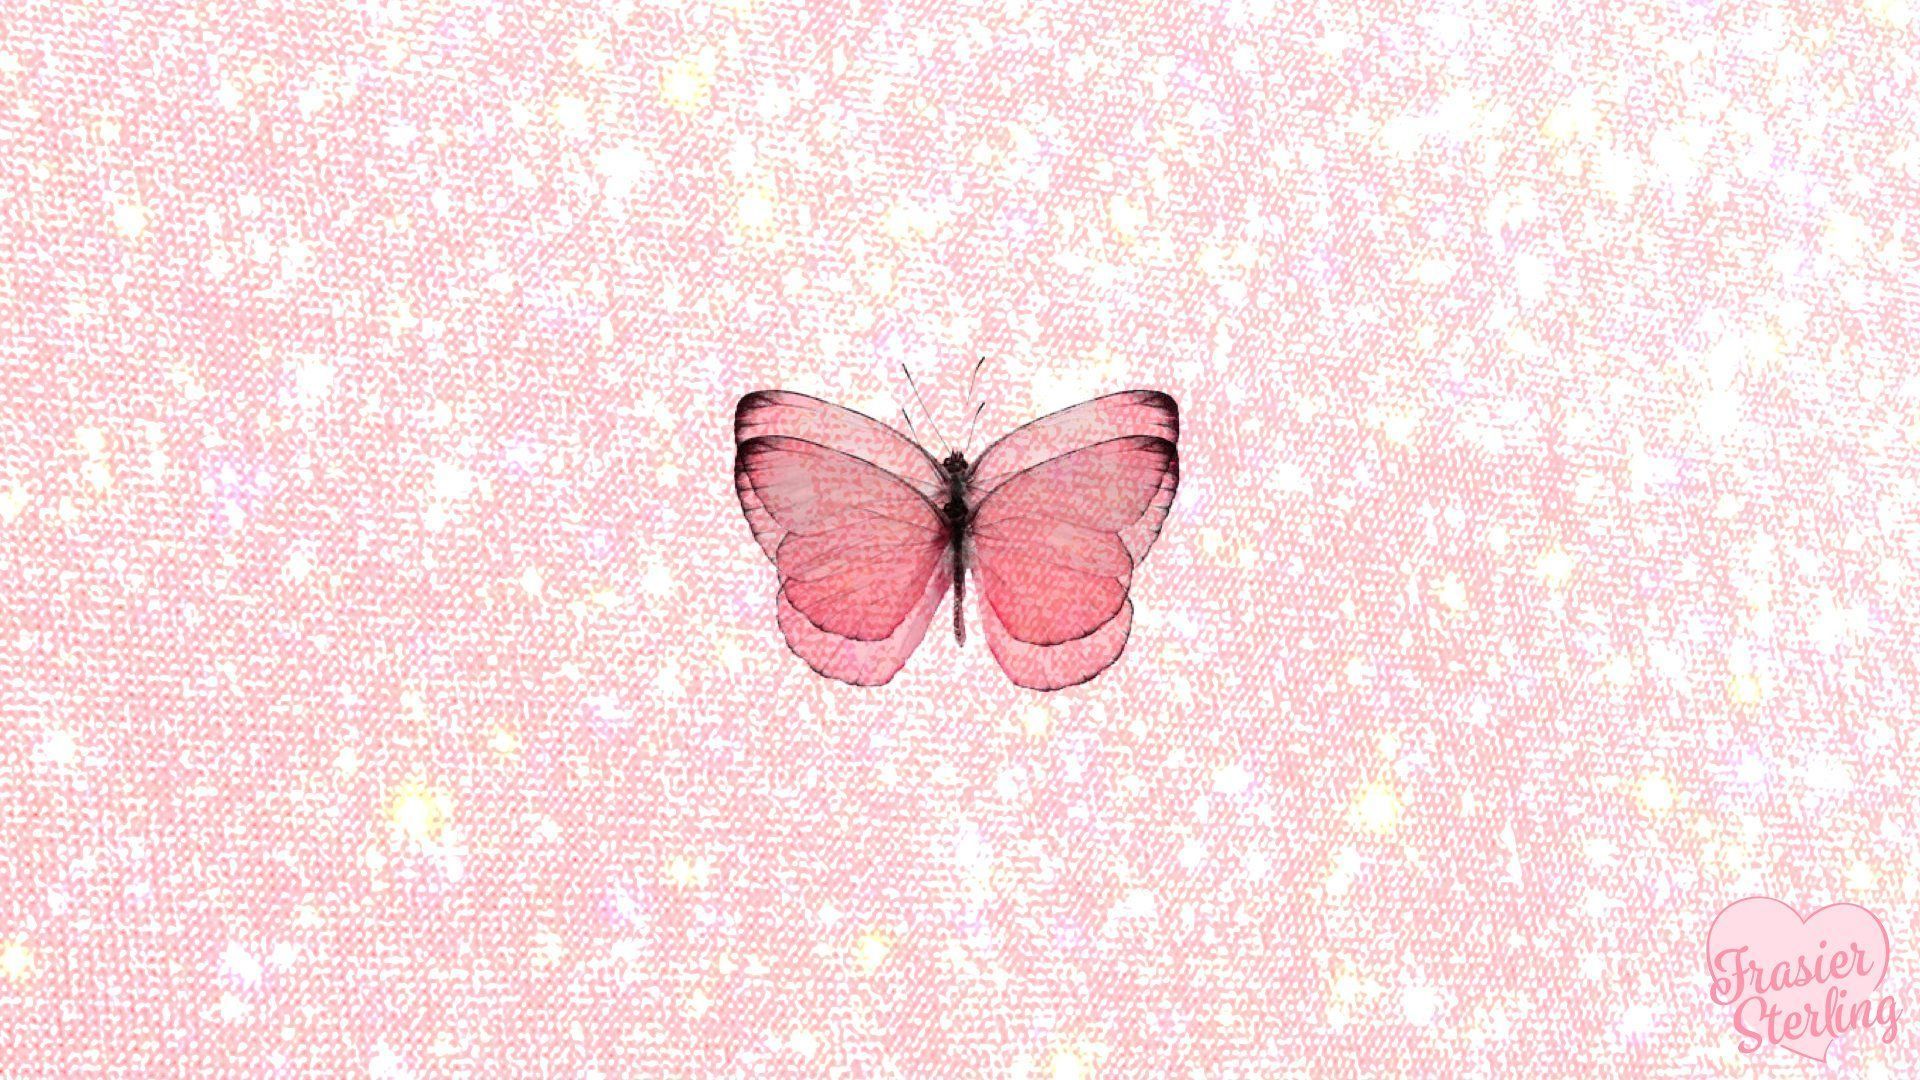 Butterfly Aesthetic Desktop Wallpaper .wallpaperaccess.com